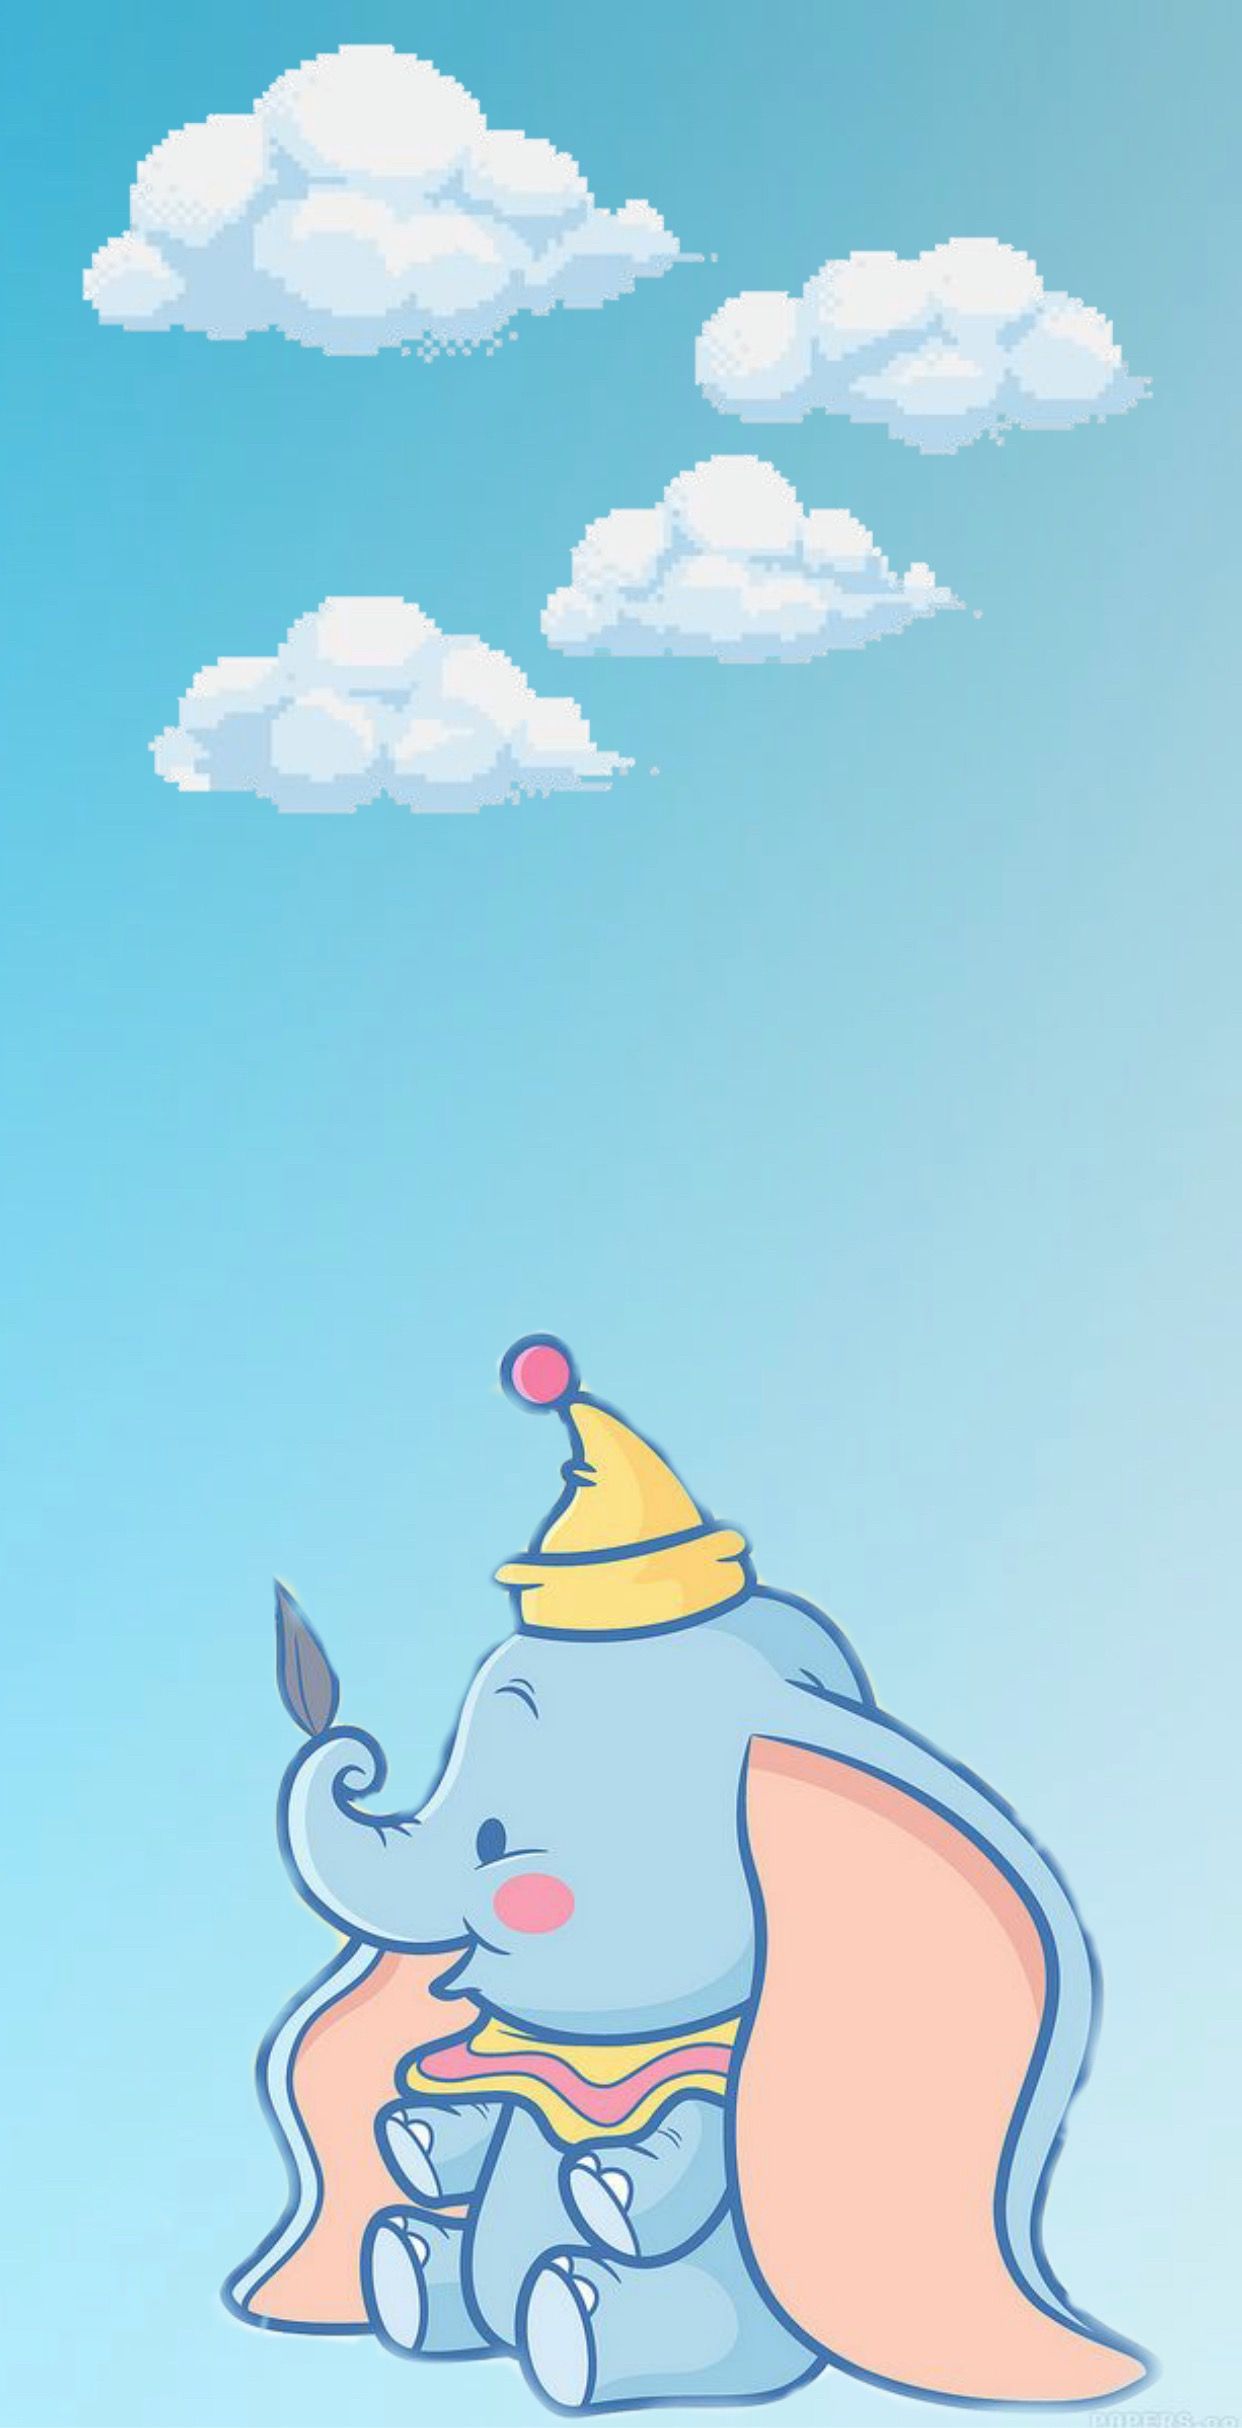 Baby Dumbo Wallpaper Cartoon Cute